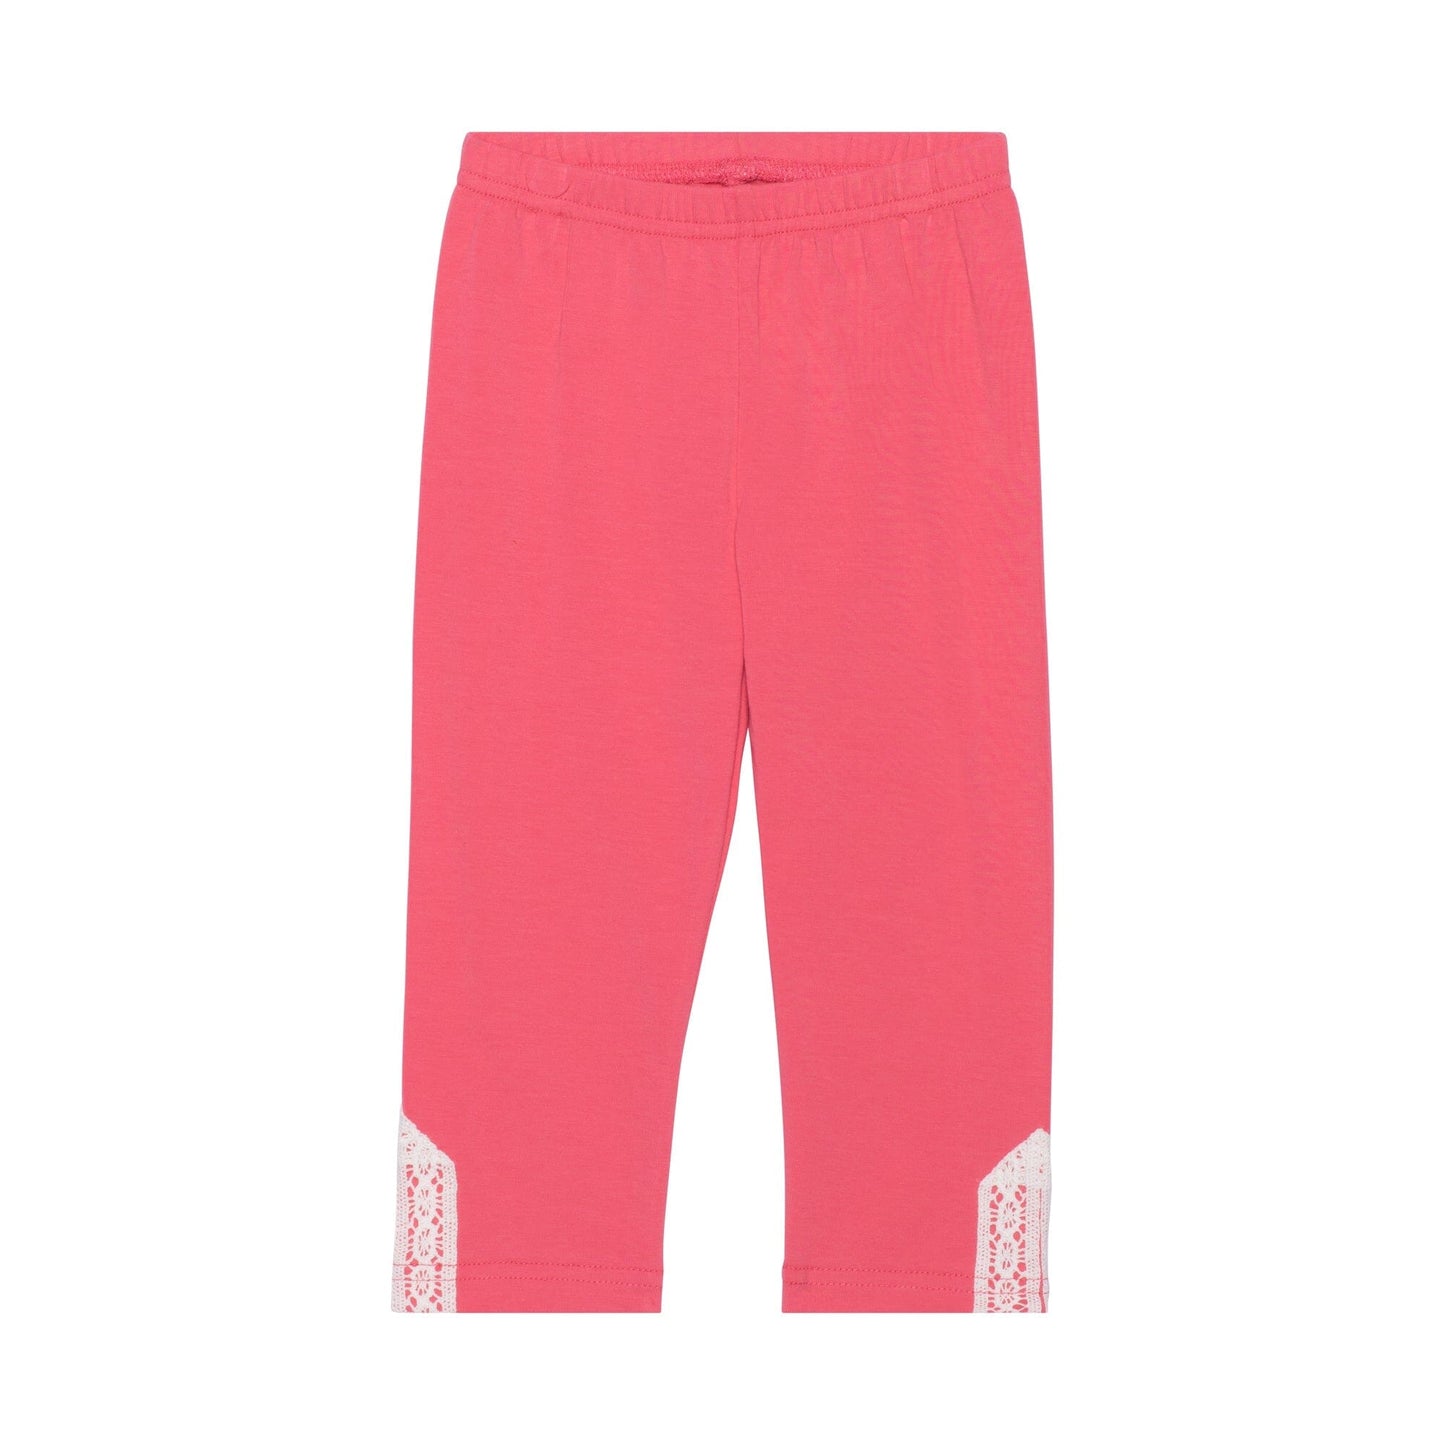 Organic Cotton Capri Legging With Crochet Coral Pink - E30K60_656